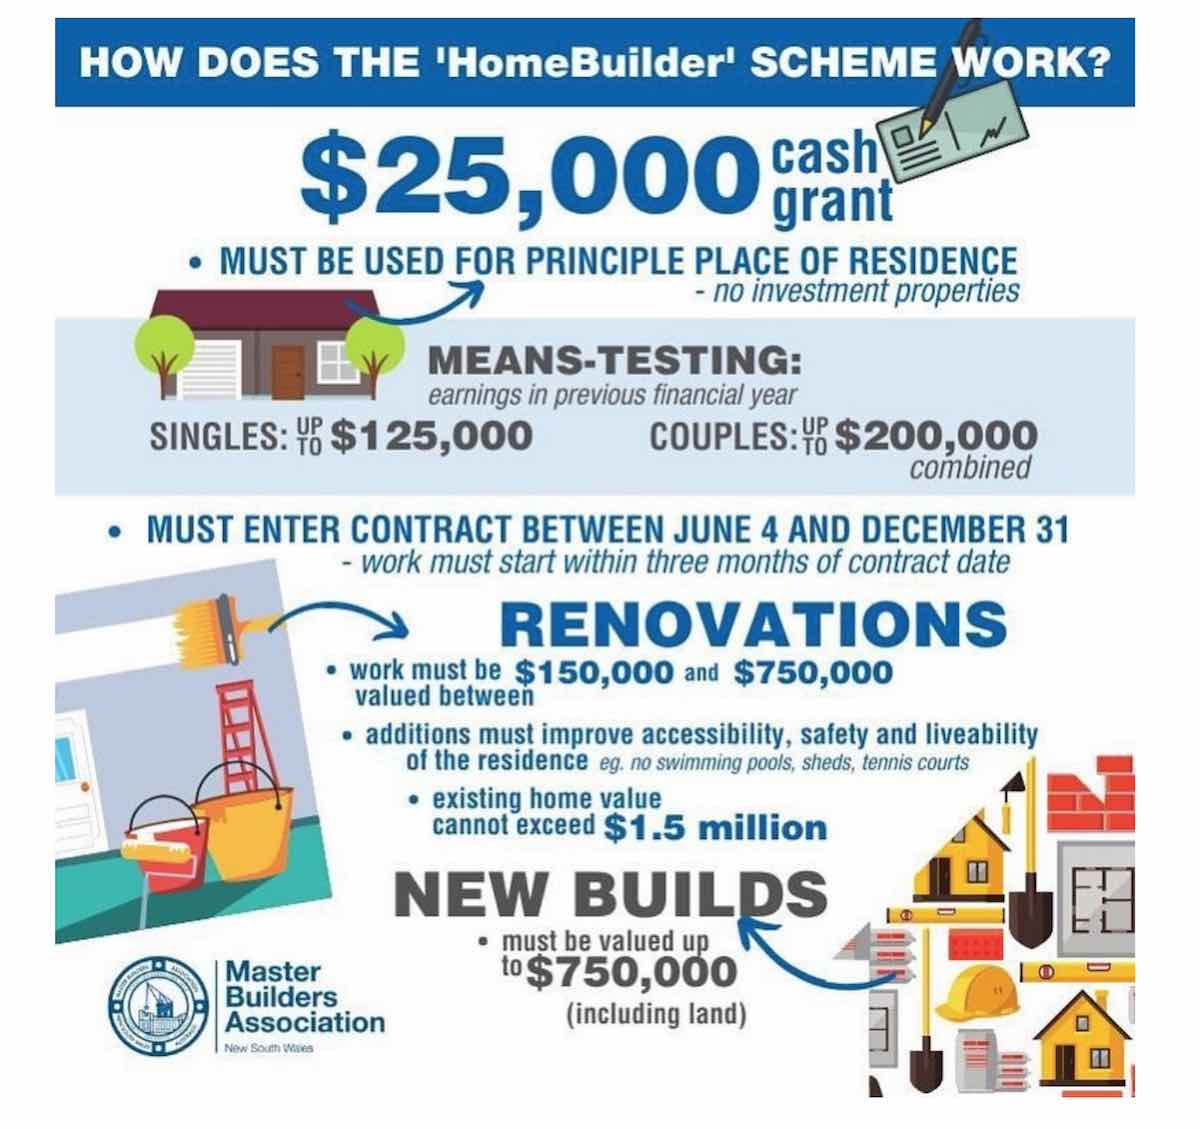 Home Builders Scheme 2020